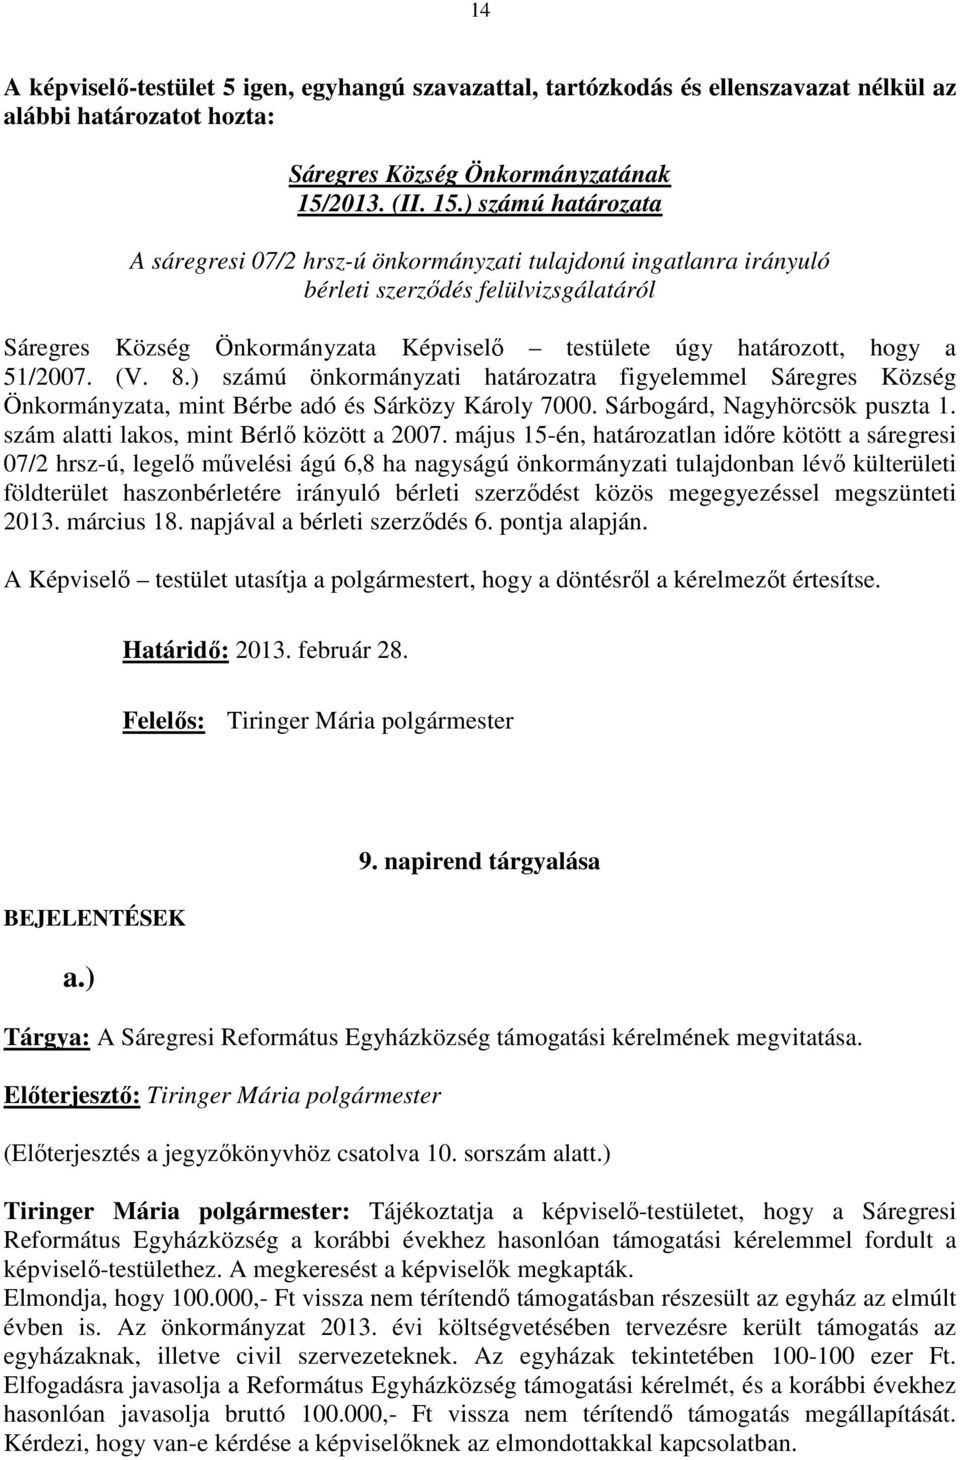 ) számú határozata A sáregresi 07/2 hrsz-ú önkormányzati tulajdonú ingatlanra irányuló bérleti szerzıdés felülvizsgálatáról Sáregres Község Önkormányzata Képviselı testülete úgy határozott, hogy a